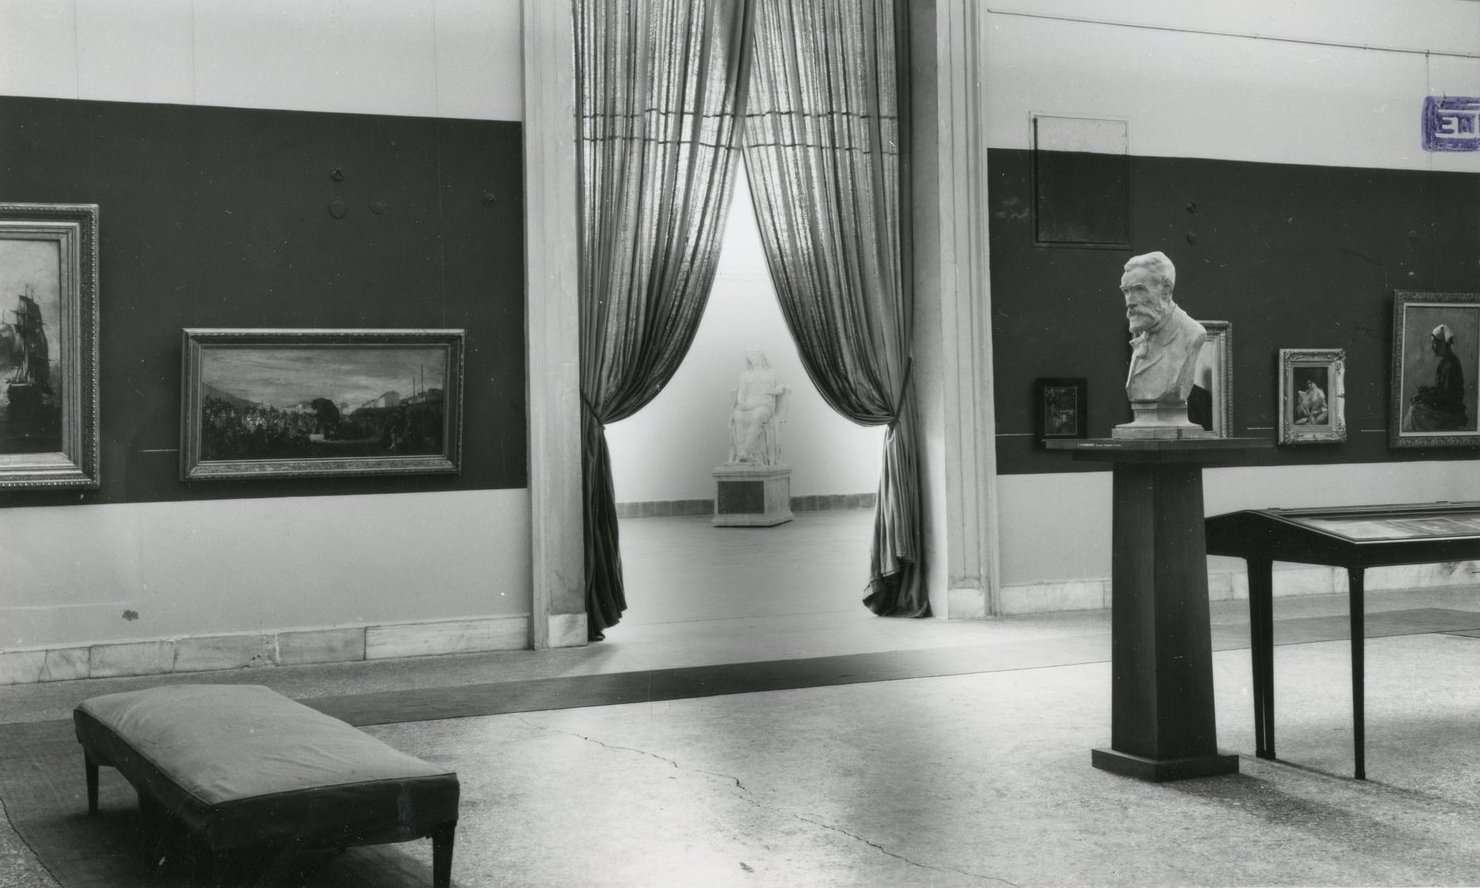 Η προτομή του ζωγράφου Νικηφόρου Λύτρα, του Γεωργίου Ιακωβίδη, στην έκθεση του Ζαππείου το 1954. Στο βάθος διακρίνεται η Πηνελόπη του Λεωνίδα Δρόση